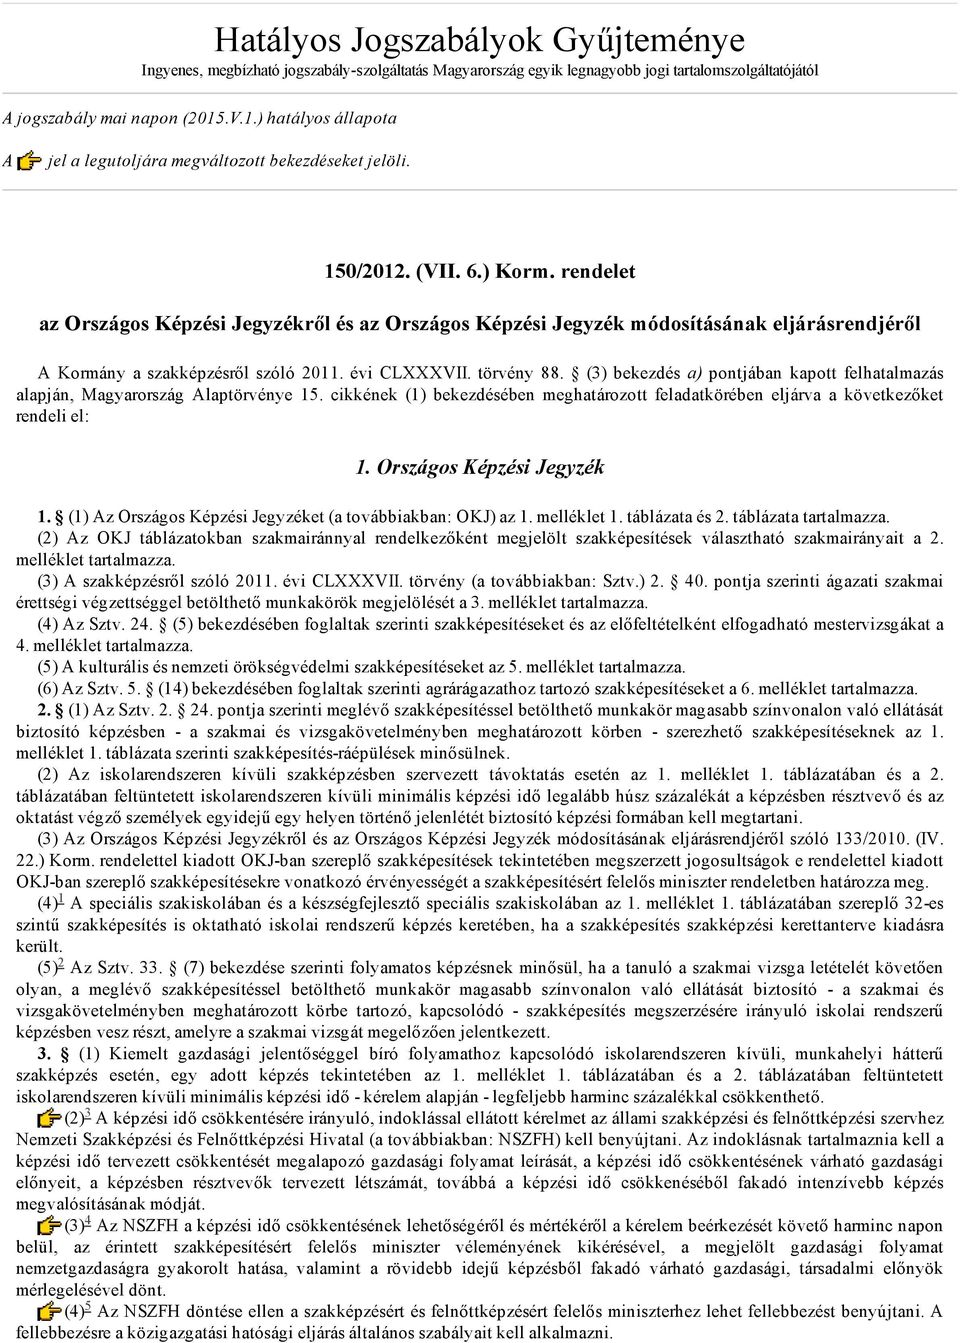 rendelet az Országos Képzi Jegyzékről az Országos Képzi Jegyzék módosításának eljárásrendjéről A Kormány a szakképzről szóló 2011. évi CLXXXVII. törvény 88.